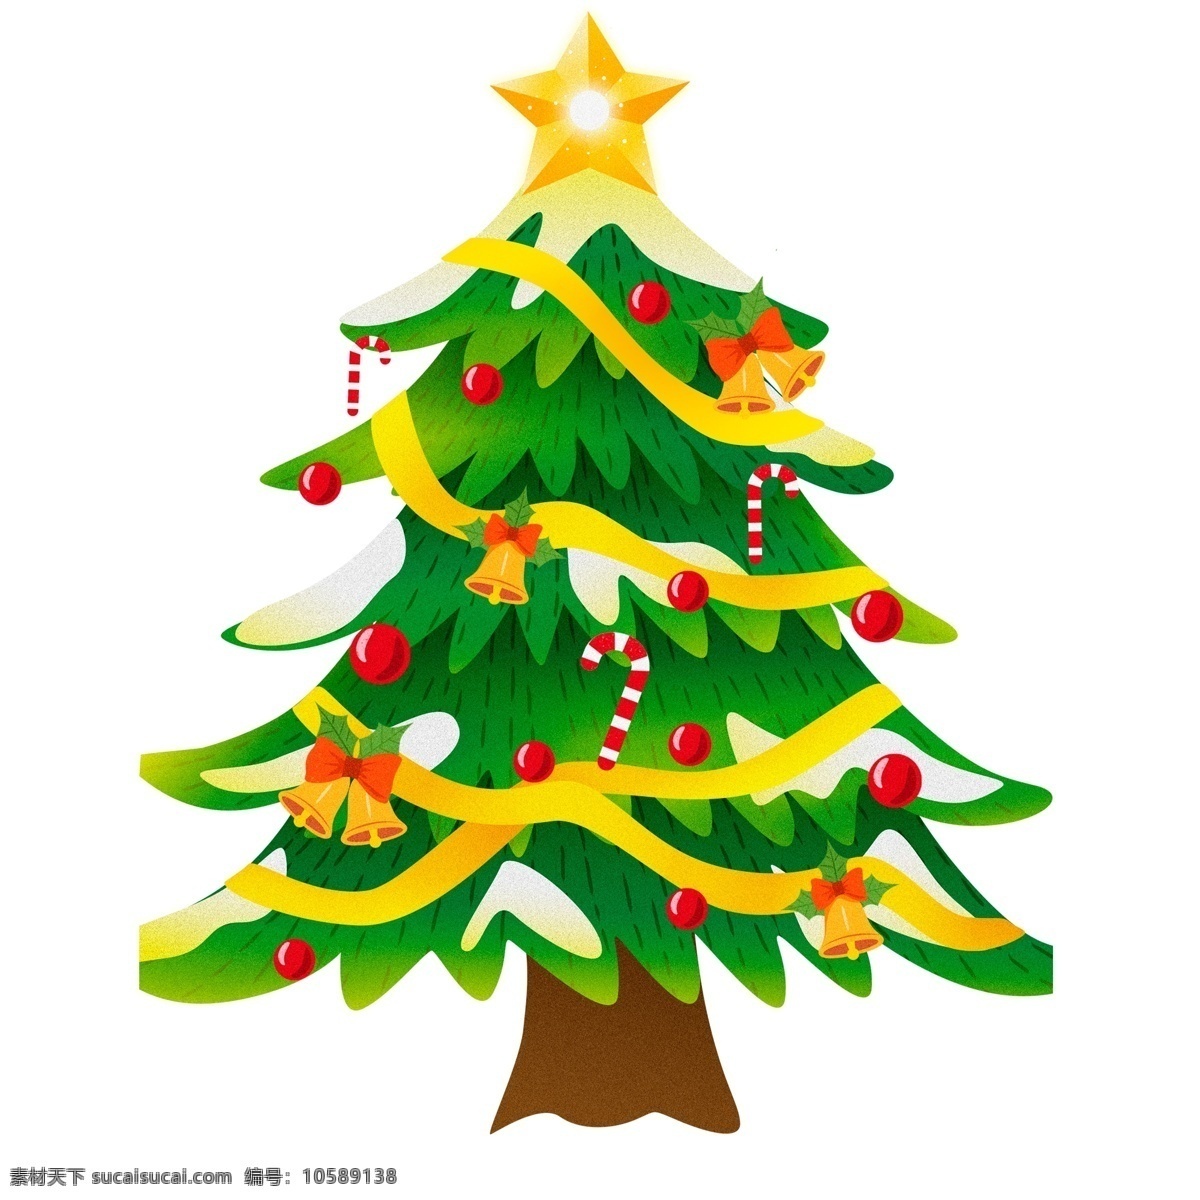 唯美 手绘 圣诞树 圣诞节 植物 装饰 圣诞元素 psd设计 节日元素 12月25日